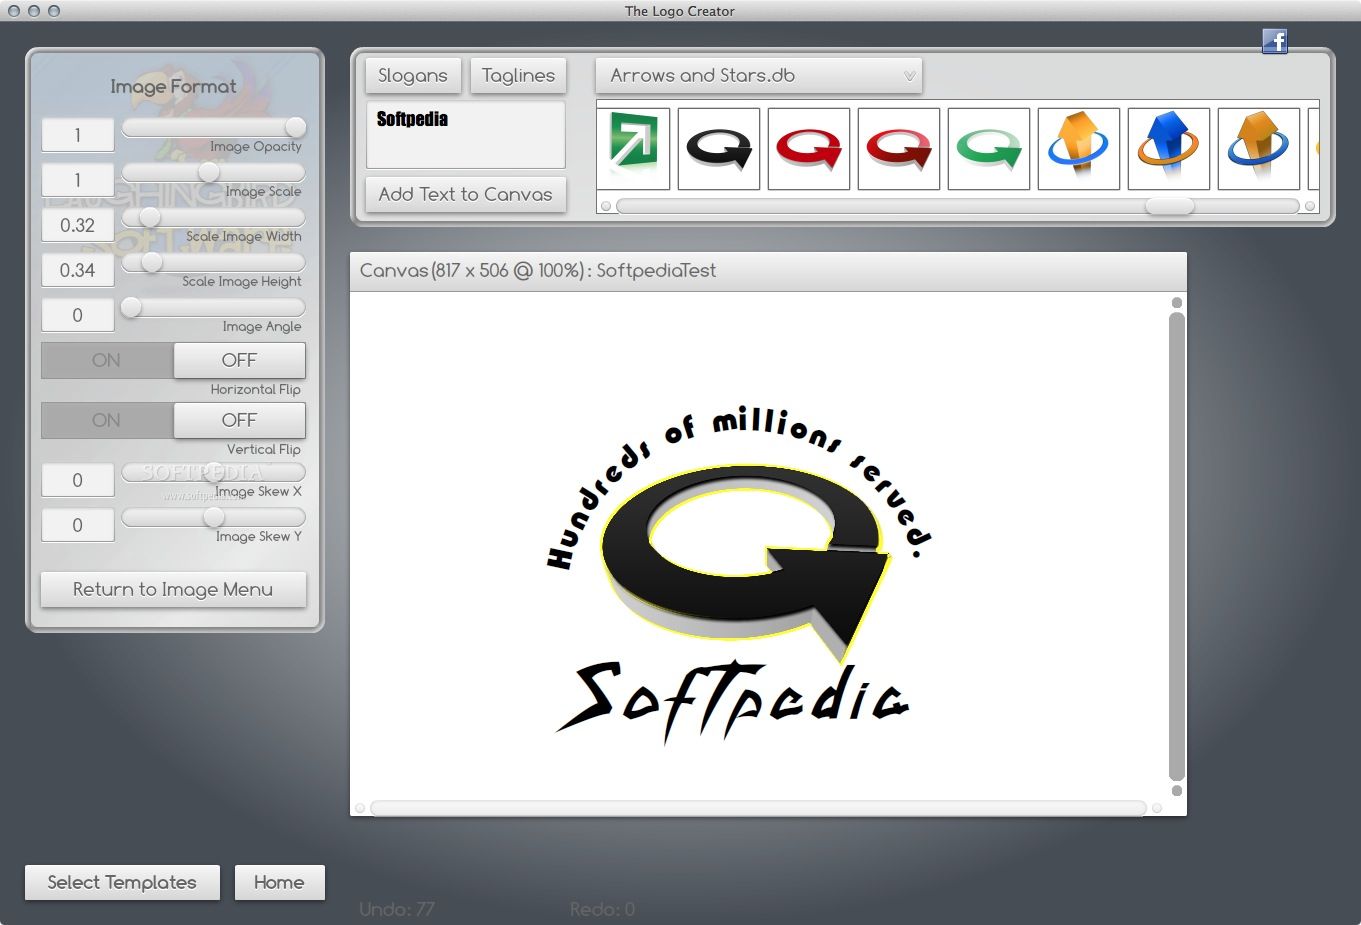 free logo creator software free download